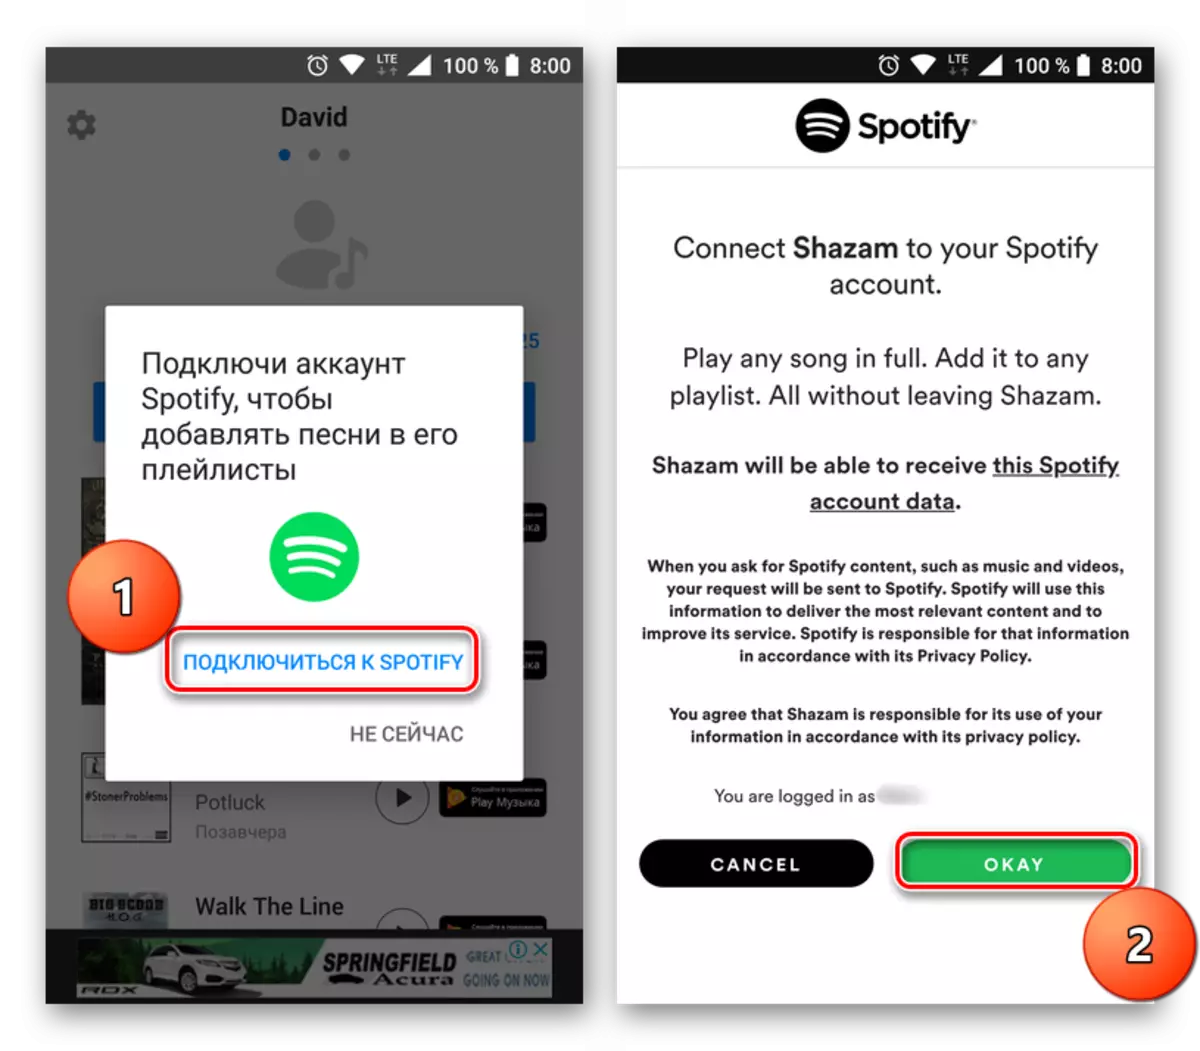 Ligue Shazam para Spotify